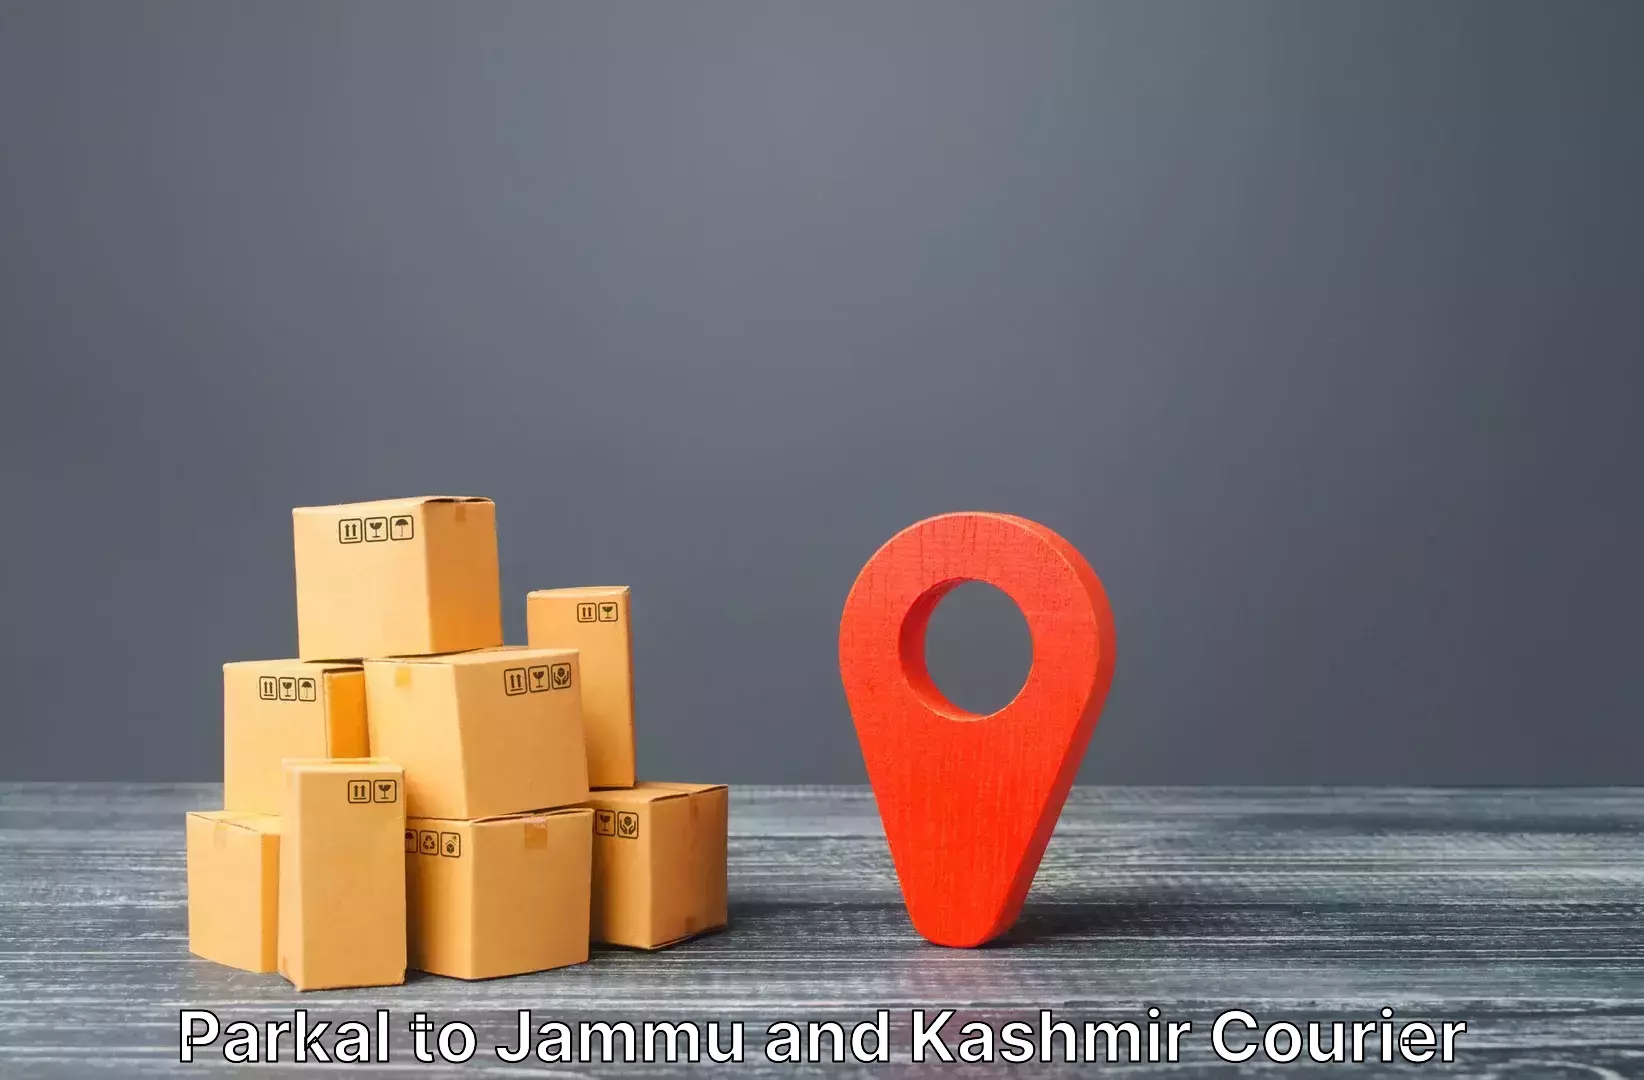 Reliable baggage delivery Parkal to Srinagar Kashmir